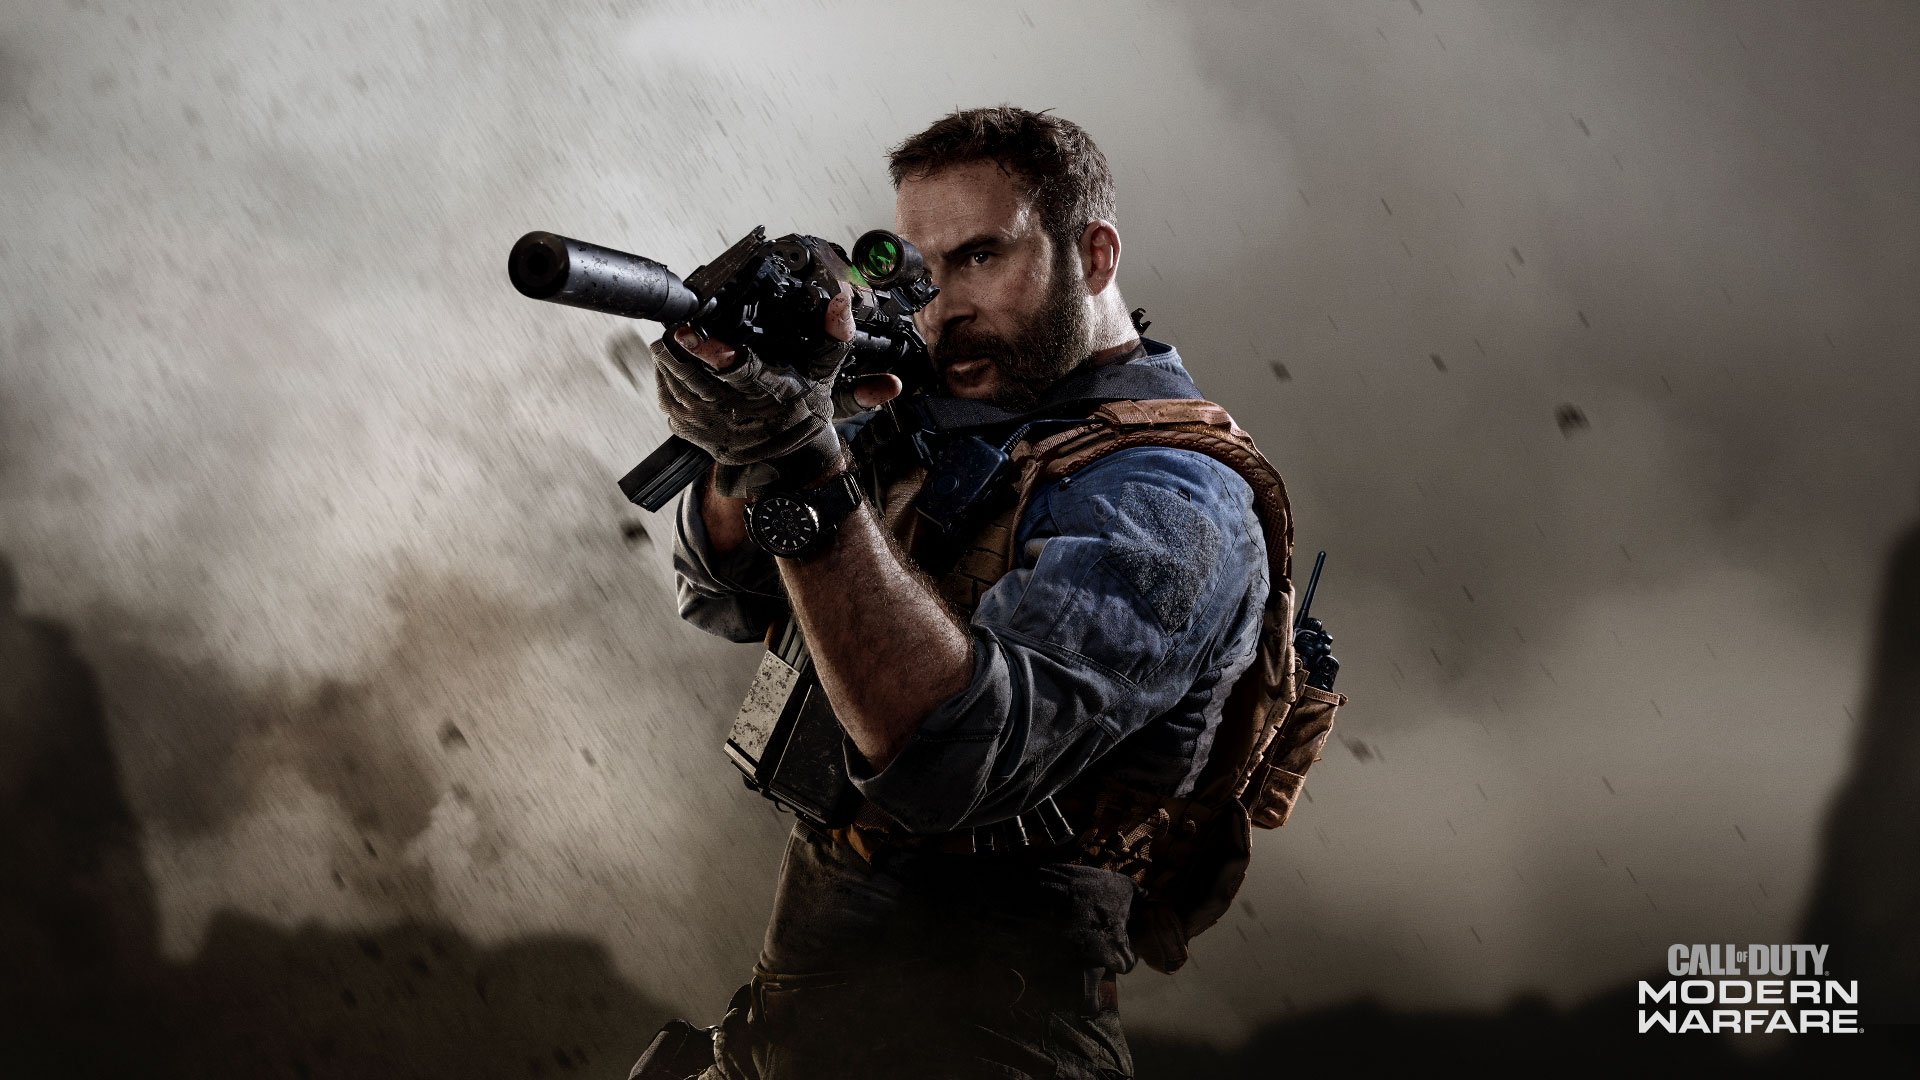 Modern Warfare (2019) a flashy, fluid take on the Call of Duty formula